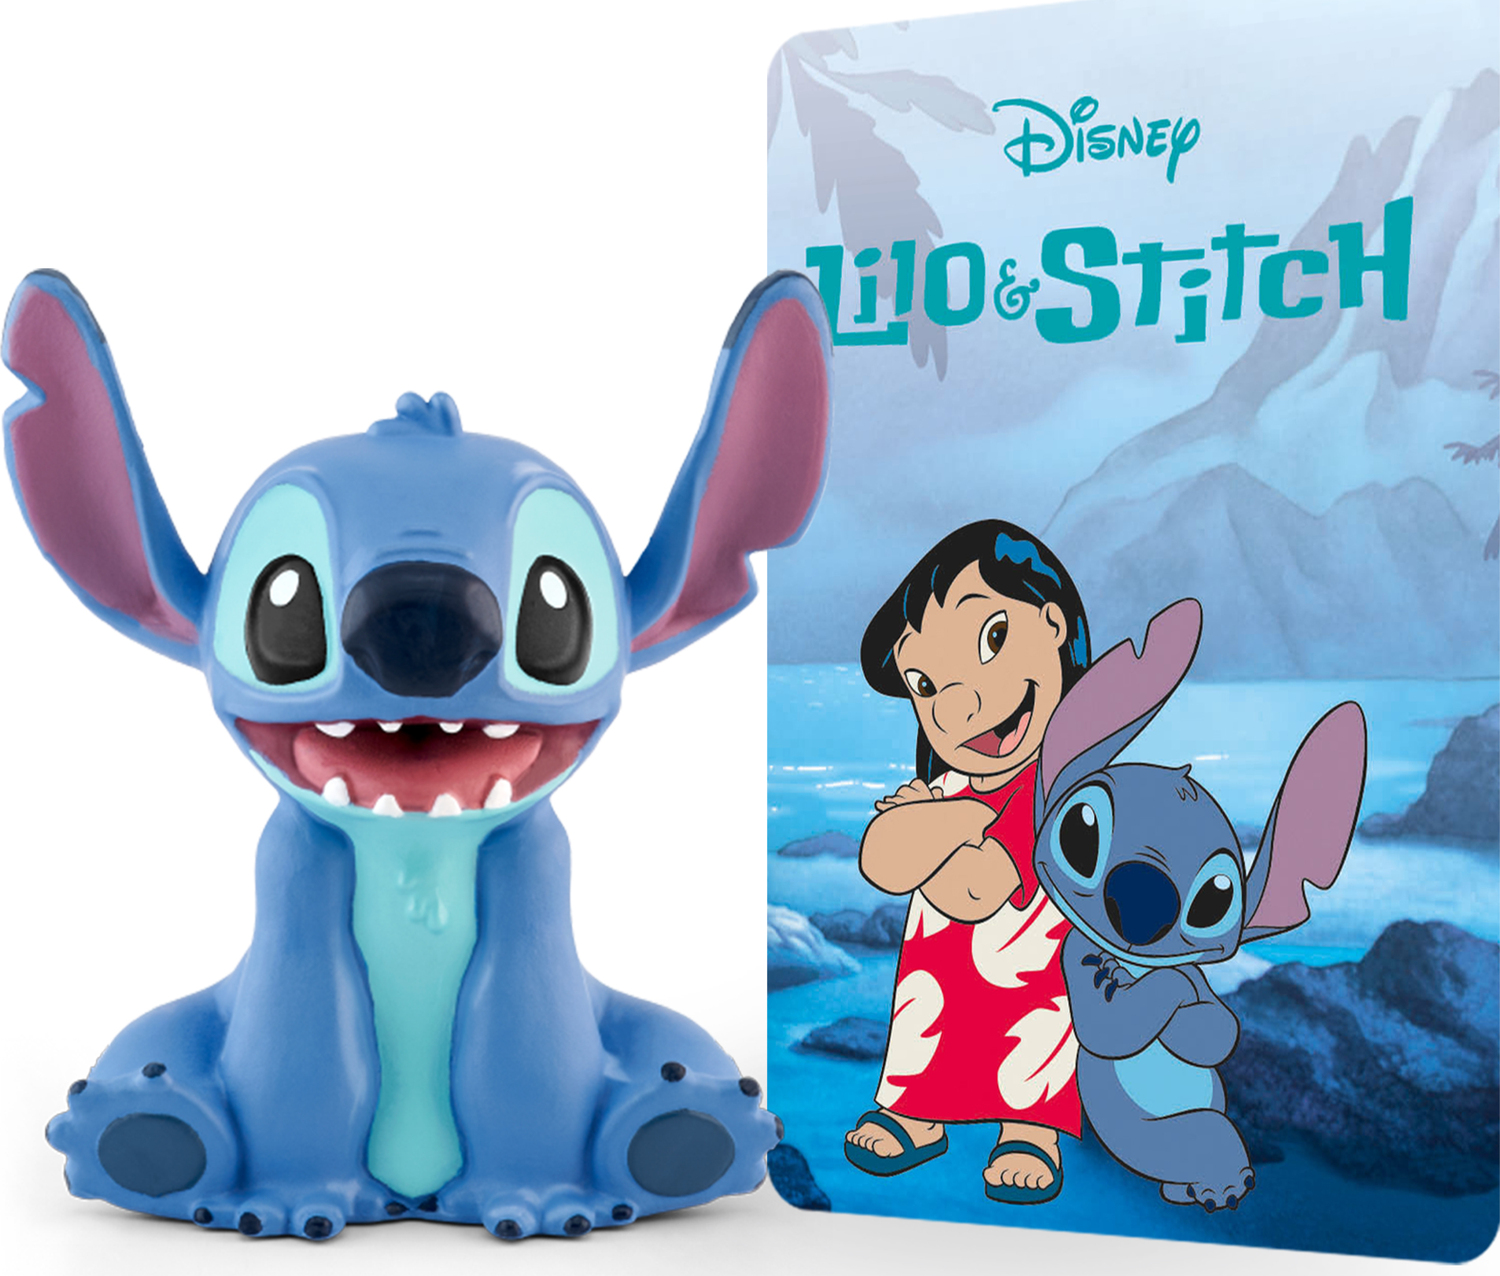 Stitch  Stitch disney, Lelo and stitch, Stitch toy